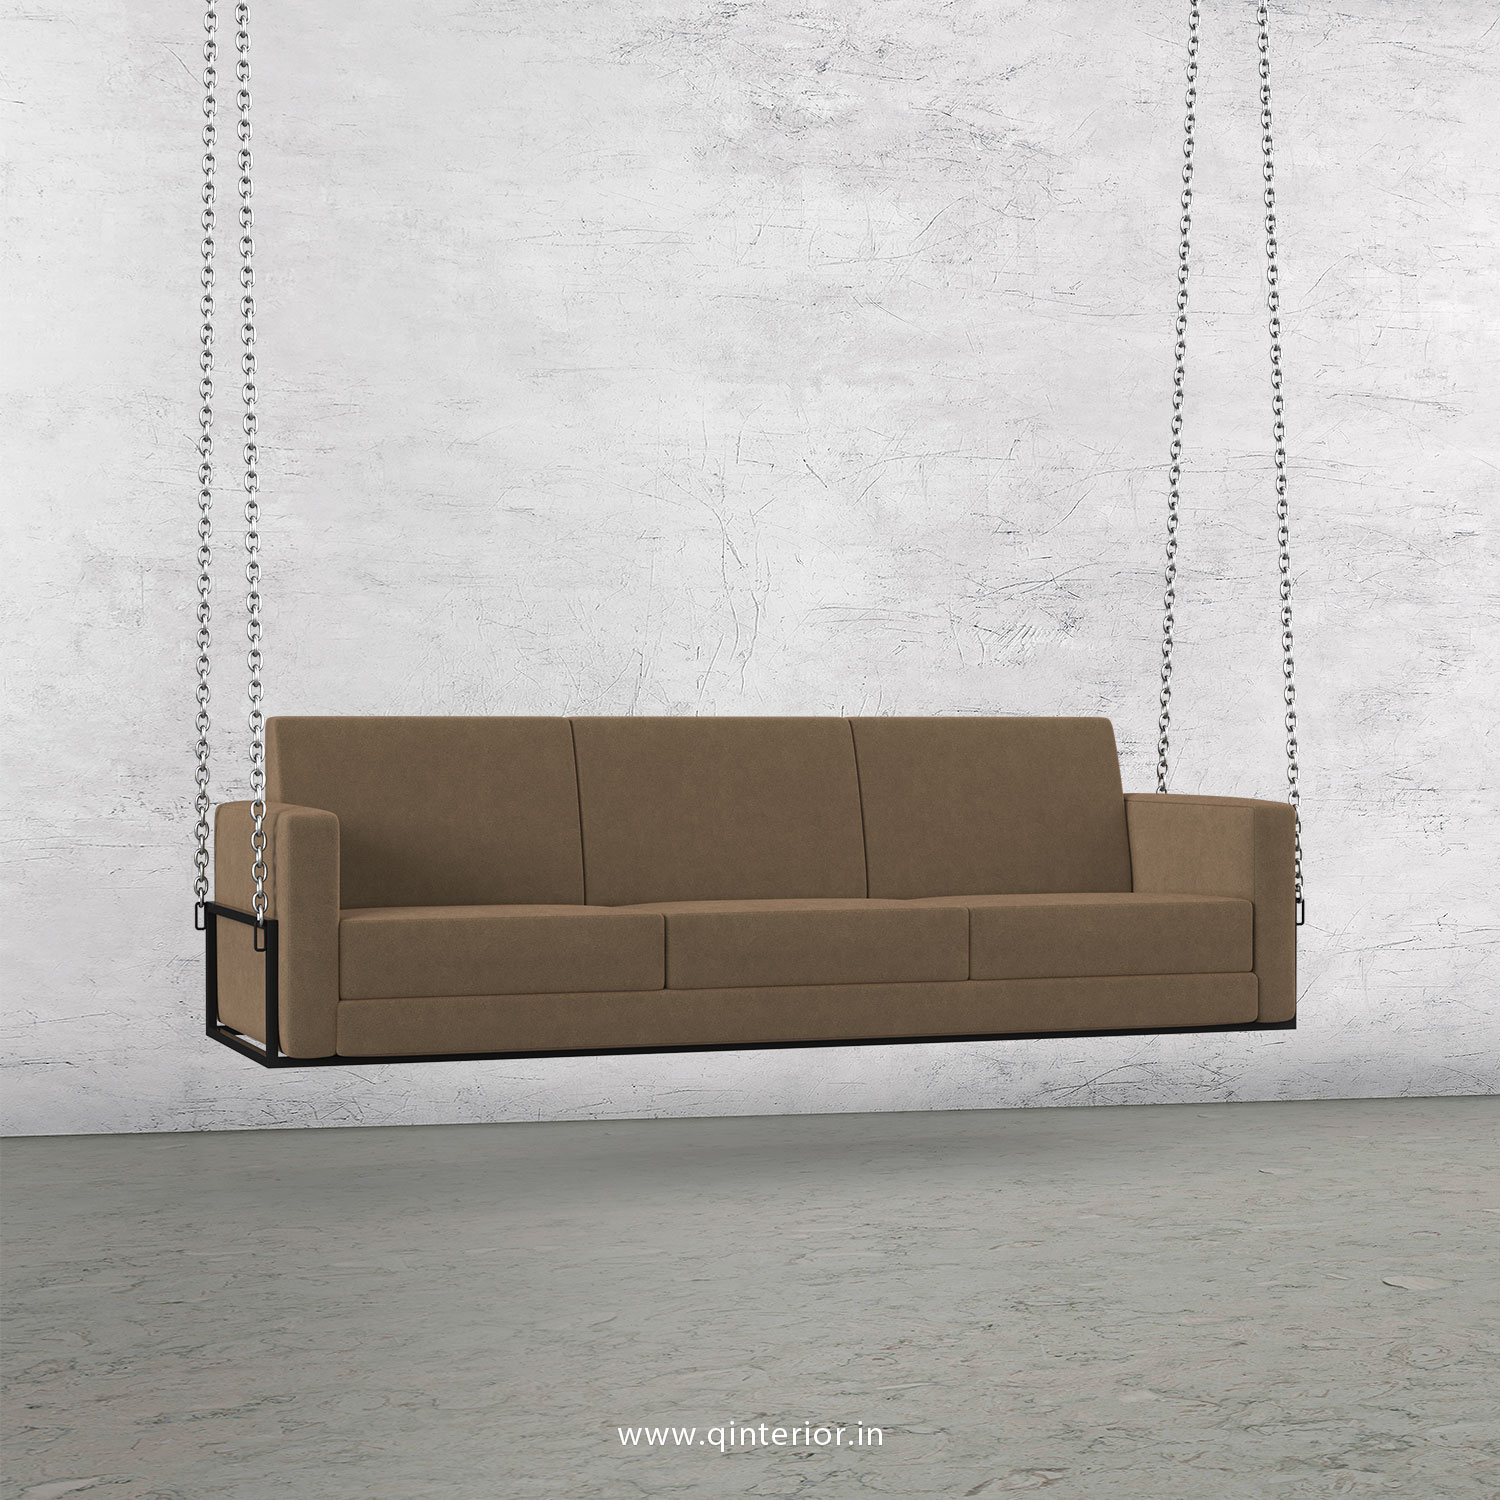 NIRVANA 3 Seater Swing Sofa in Velvet Fabric - SSF001 VL03